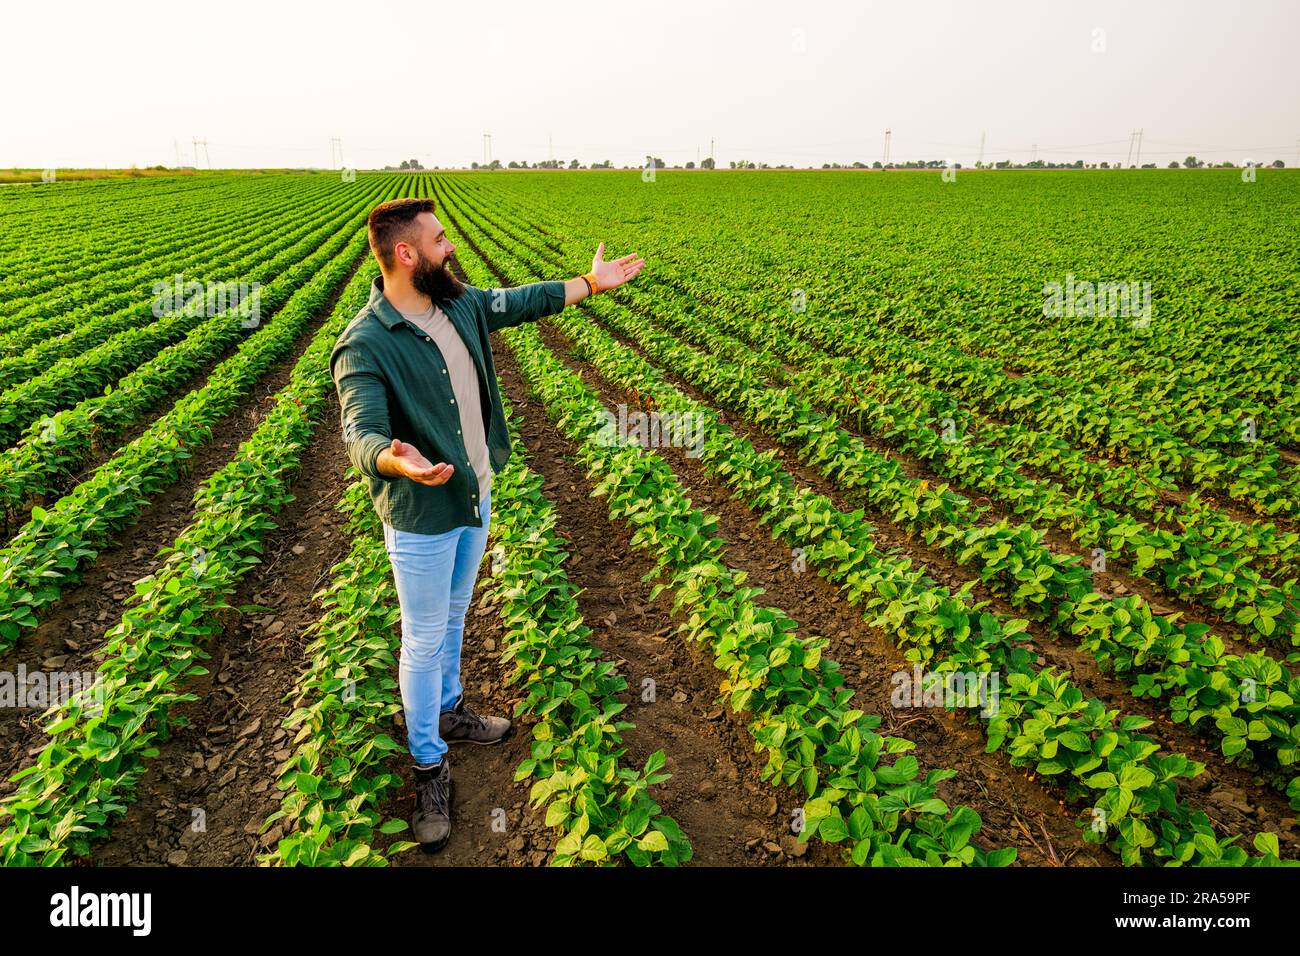 Ritratto di un agricoltore che sta coltivando soia. È soddisfatto dei buoni progressi delle piante. Occupazione agricola. Foto Stock